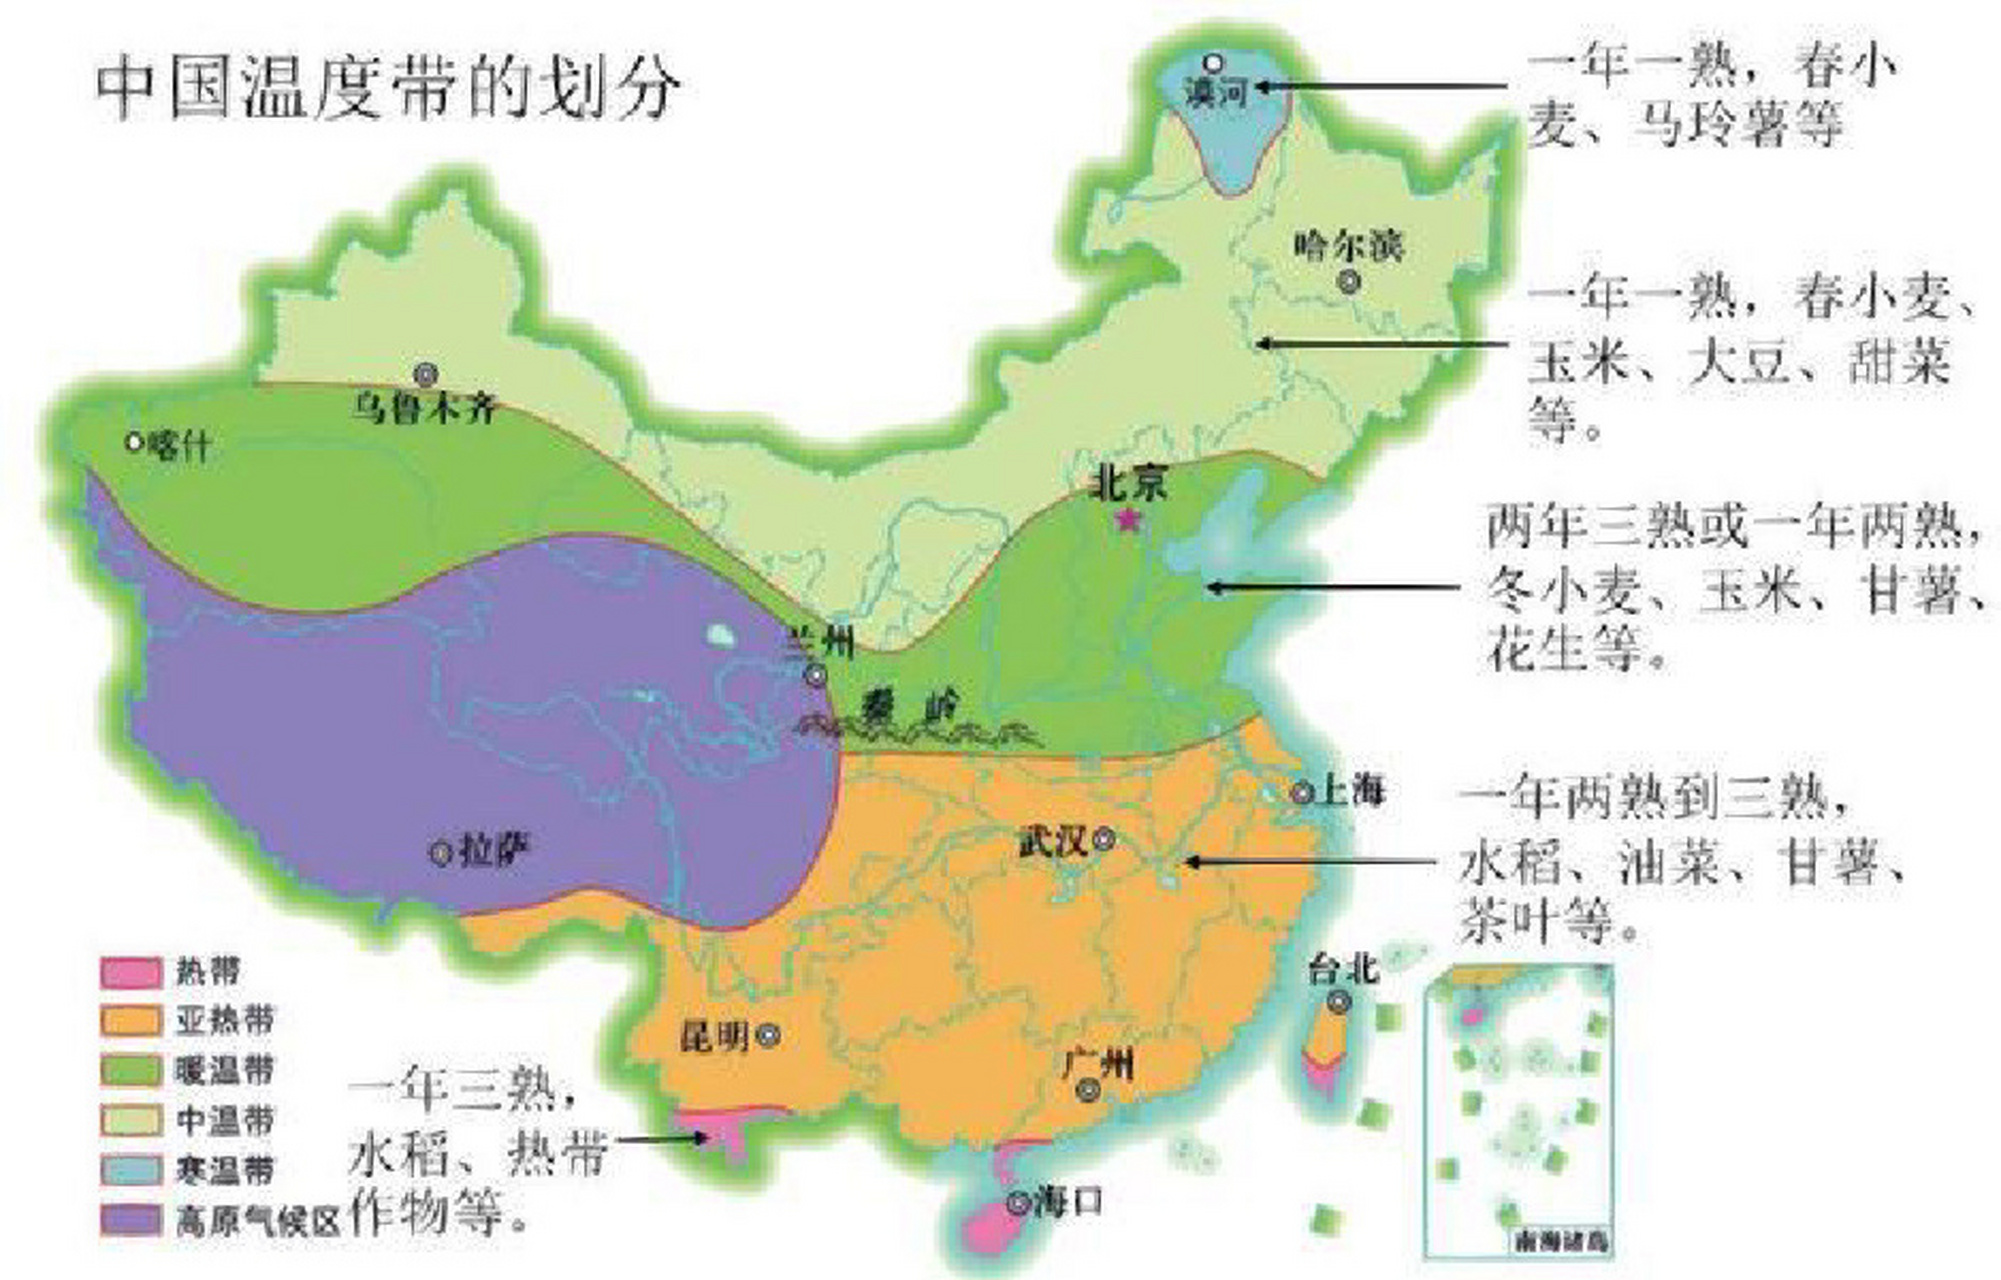 初中地理丨难点·中国的温度带的划分 答题认真看题,和五带区分开